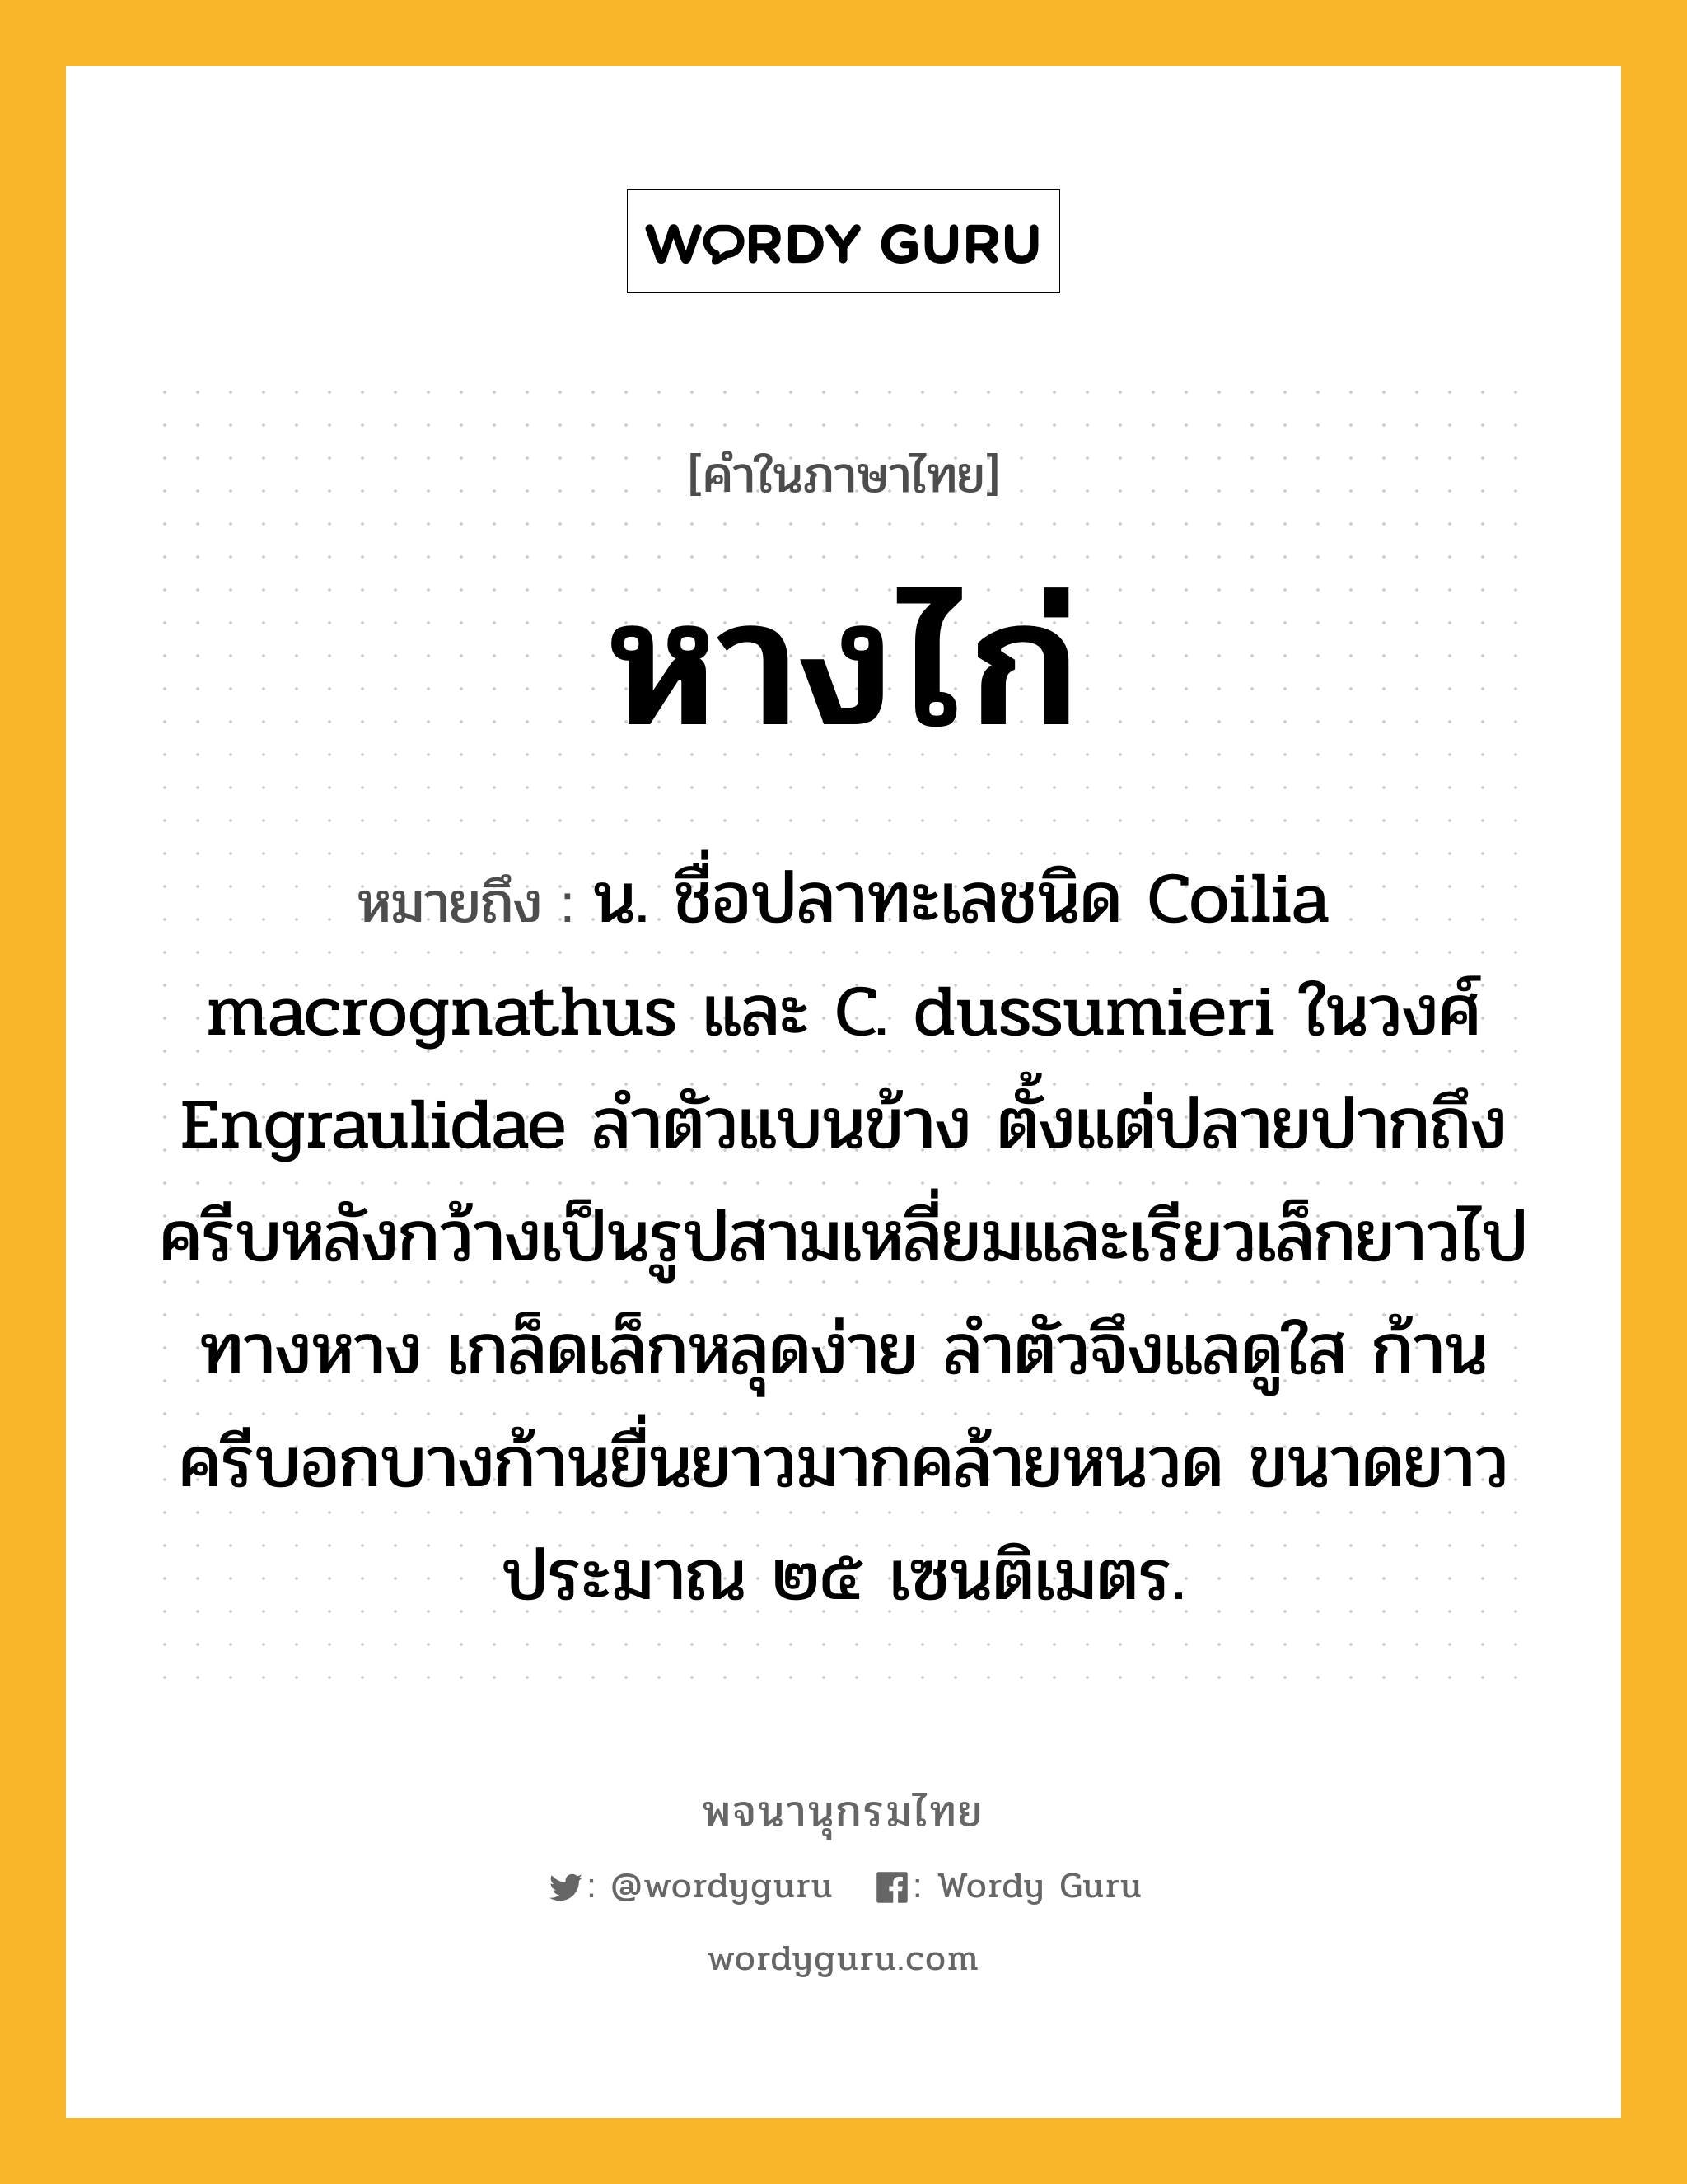 หางไก่ หมายถึงอะไร?, คำในภาษาไทย หางไก่ หมายถึง น. ชื่อปลาทะเลชนิด Coilia macrognathus และ C. dussumieri ในวงศ์ Engraulidae ลําตัวแบนข้าง ตั้งแต่ปลายปากถึงครีบหลังกว้างเป็นรูปสามเหลี่ยมและเรียวเล็กยาวไปทางหาง เกล็ดเล็กหลุดง่าย ลําตัวจึงแลดูใส ก้านครีบอกบางก้านยื่นยาวมากคล้ายหนวด ขนาดยาวประมาณ ๒๕ เซนติเมตร.